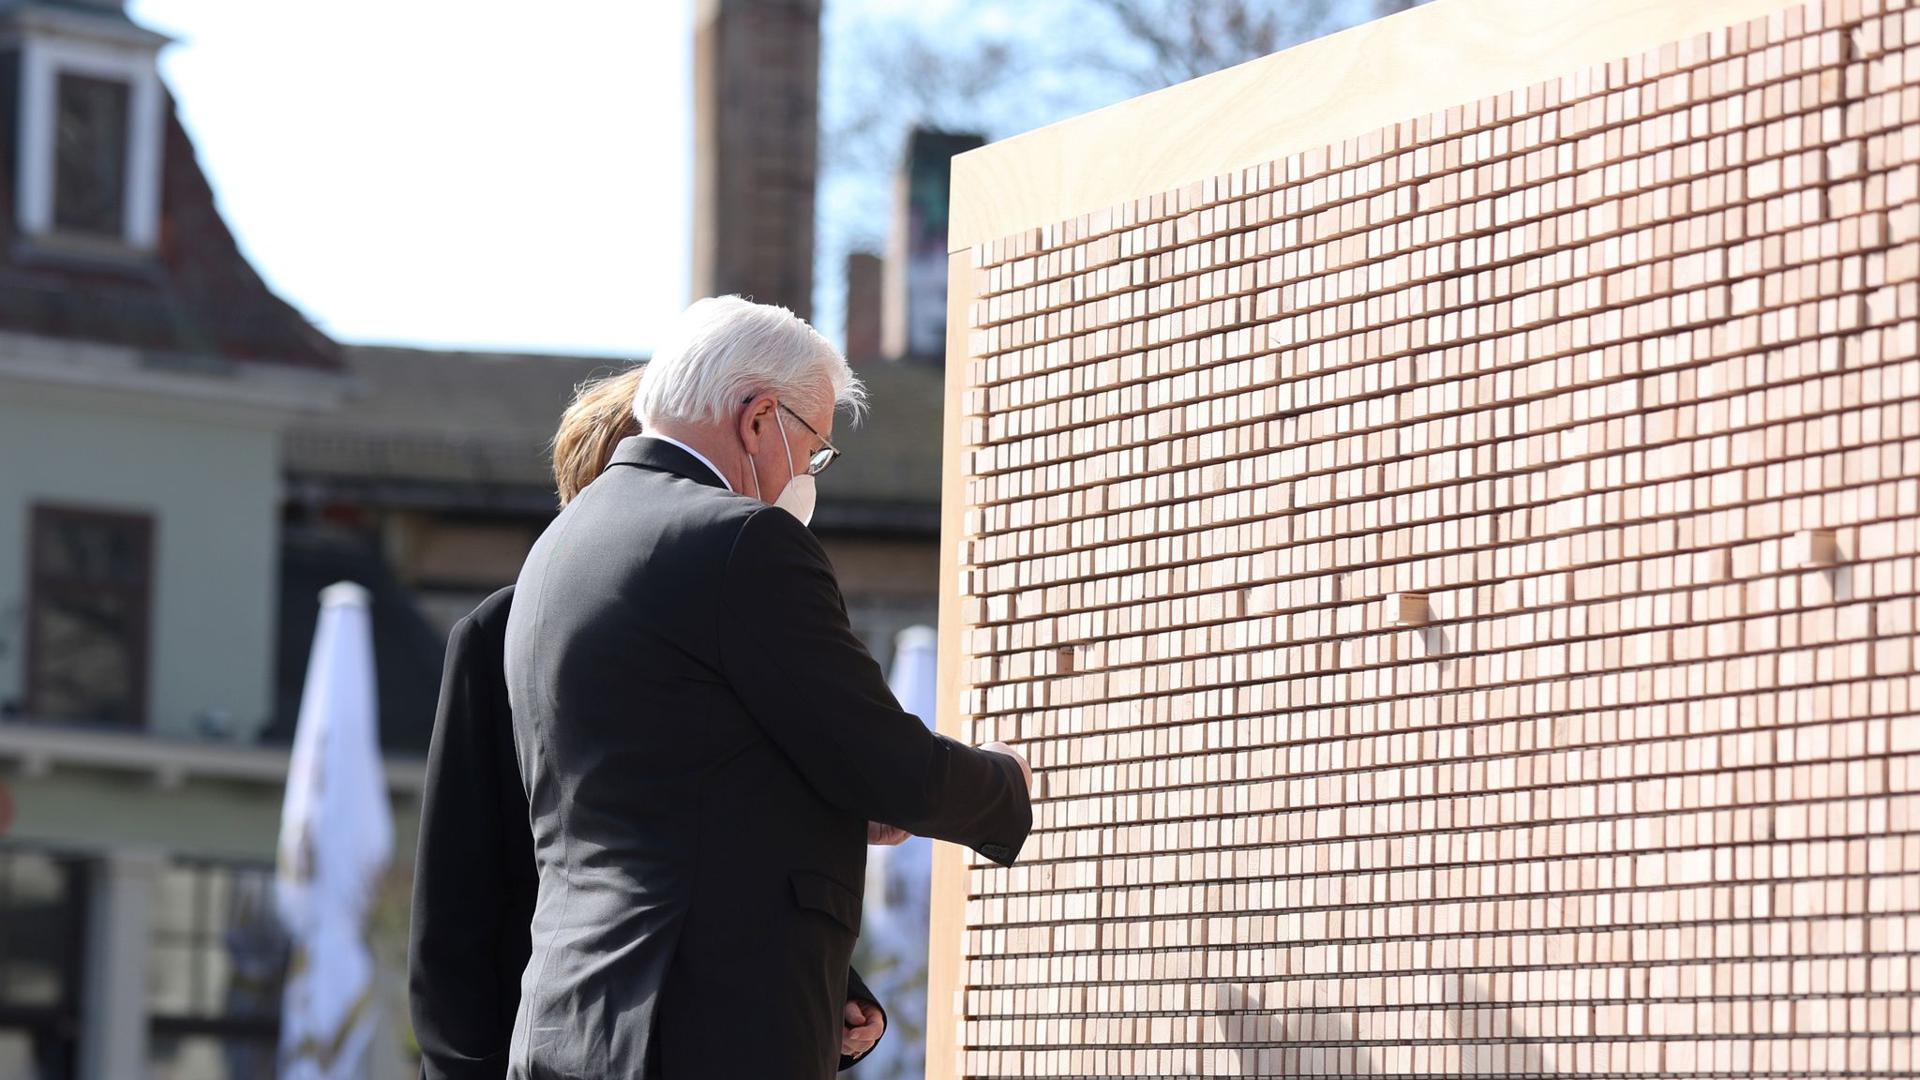 Bundespräsident Frank-Walter Steinmeier und seine Frau Elke Büdenbender vor der Installation „Verschwindende Wand - mit Botschaften, die bleiben“.